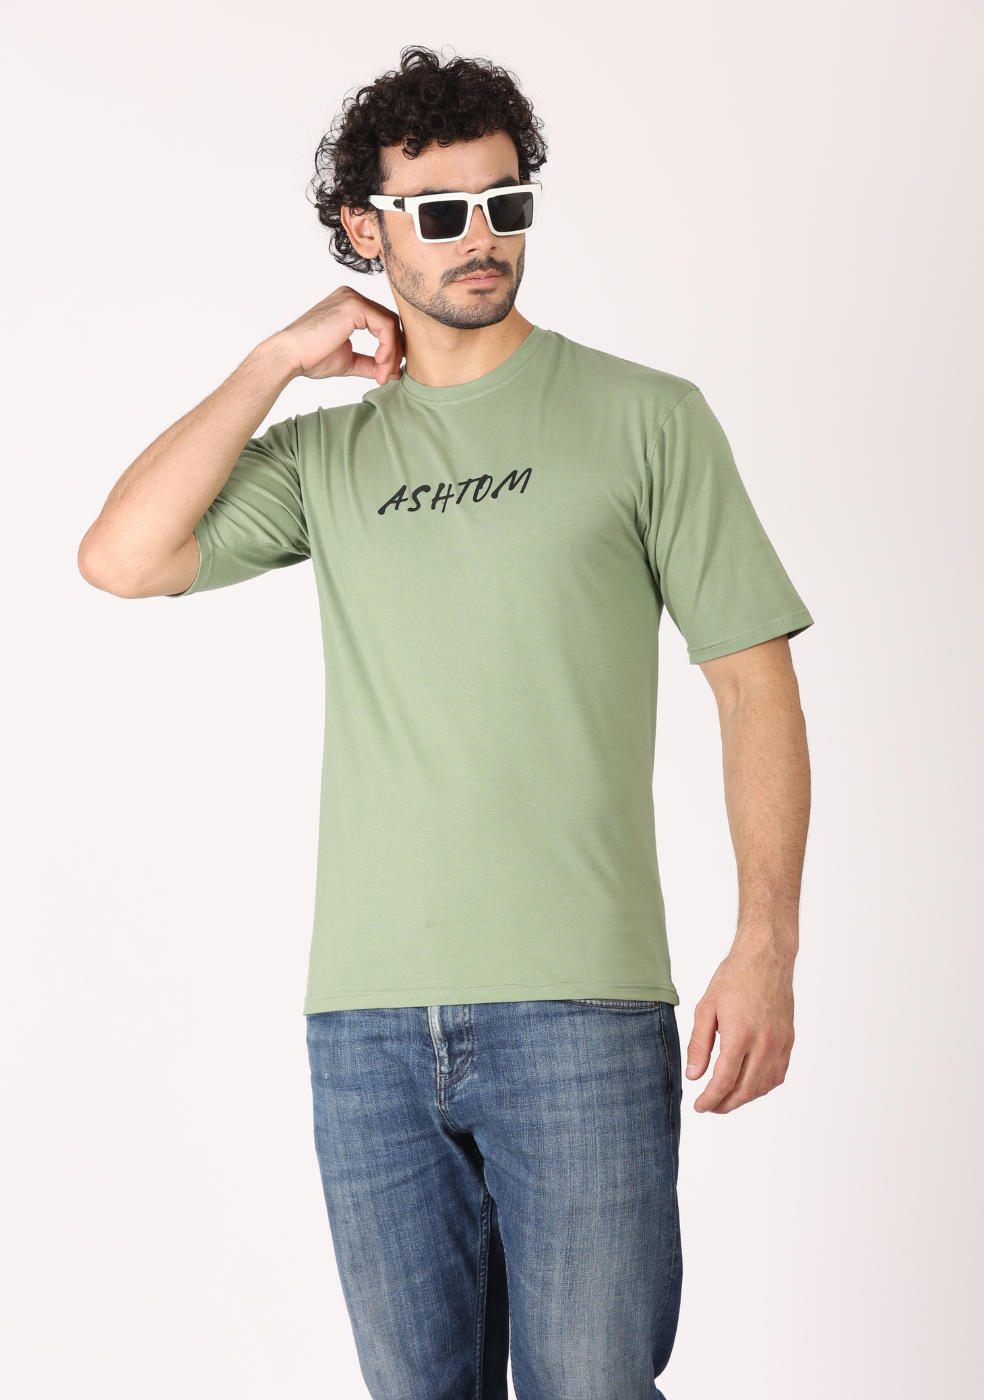 Men's Half-Sleeve Round Neck T-Shirts